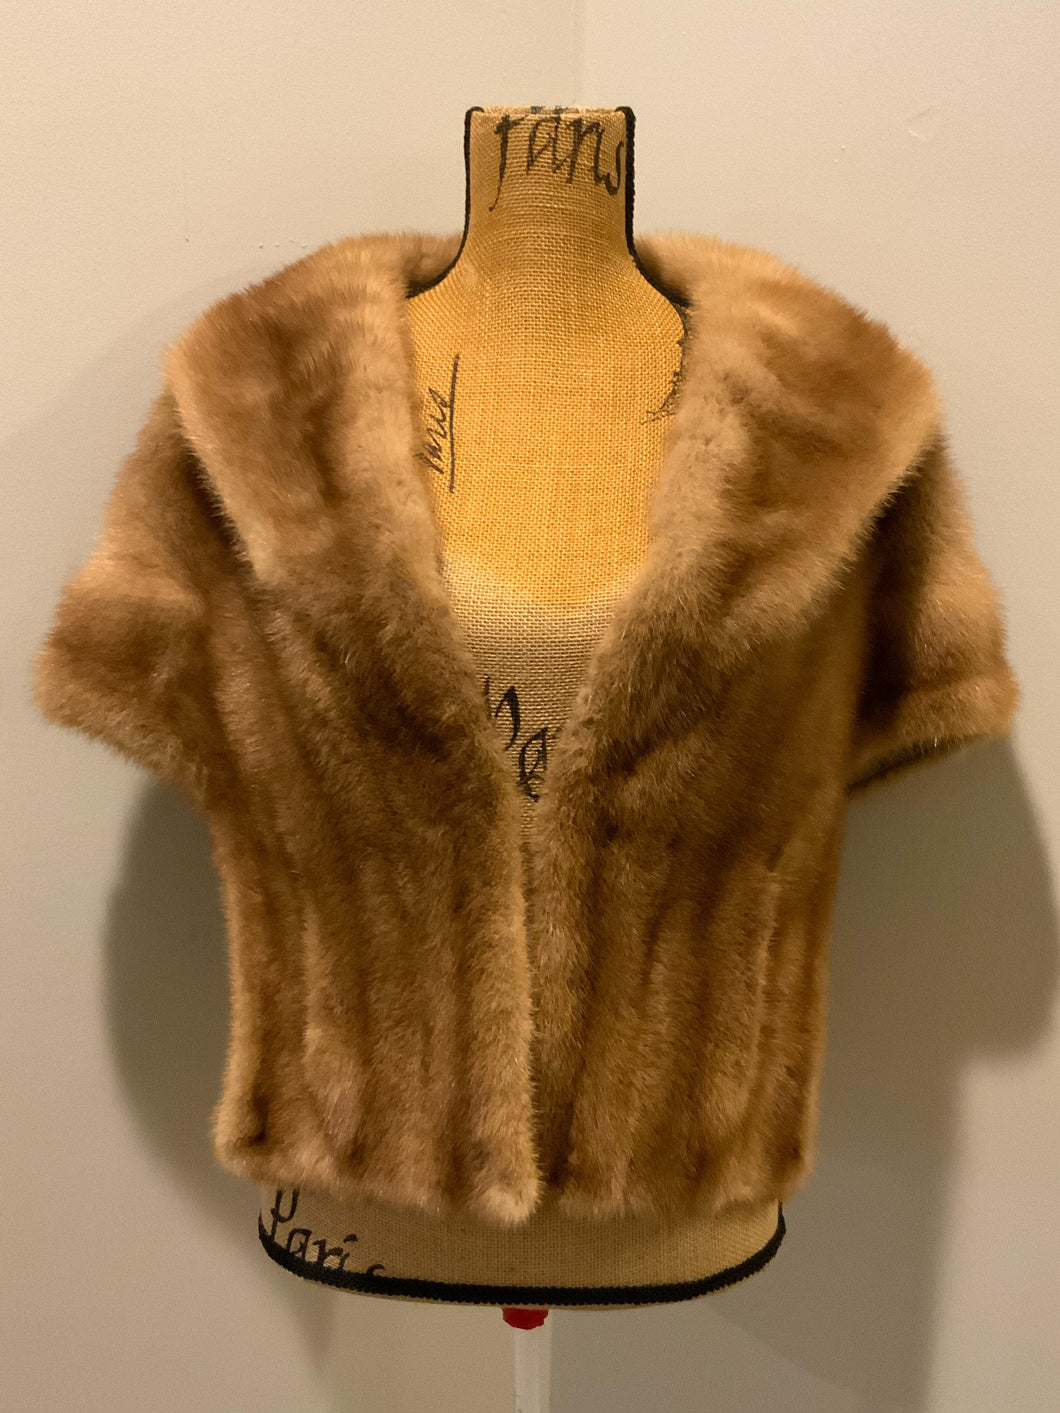 Vintage Fur caplet Stole